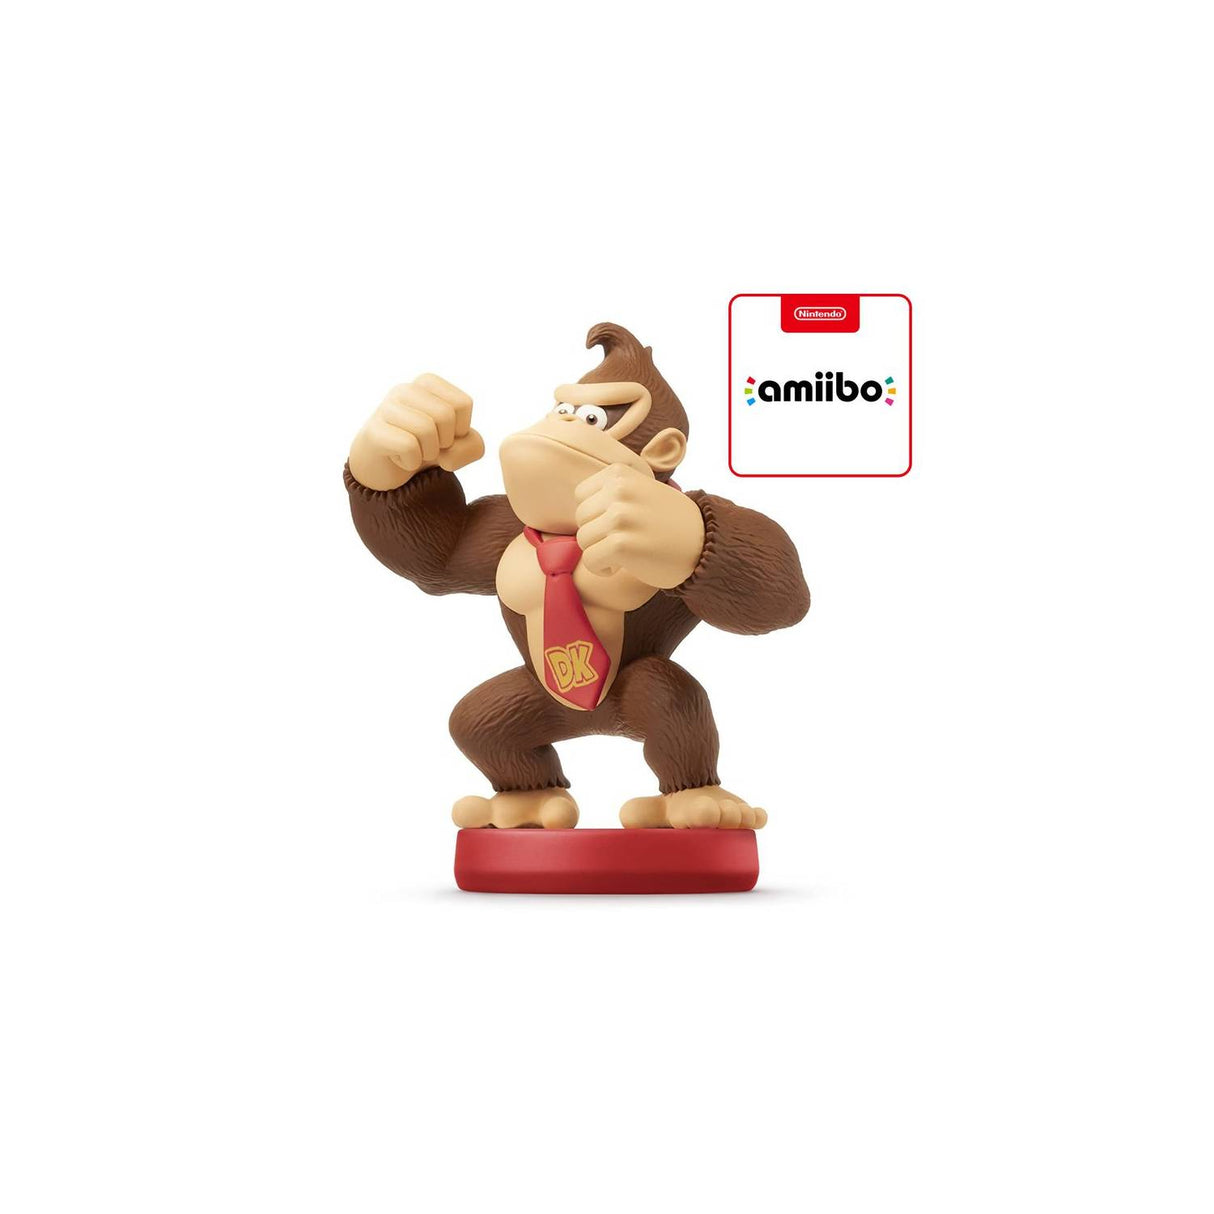 Nintendo amibo donkey kong super mario collection.  OPENBOX